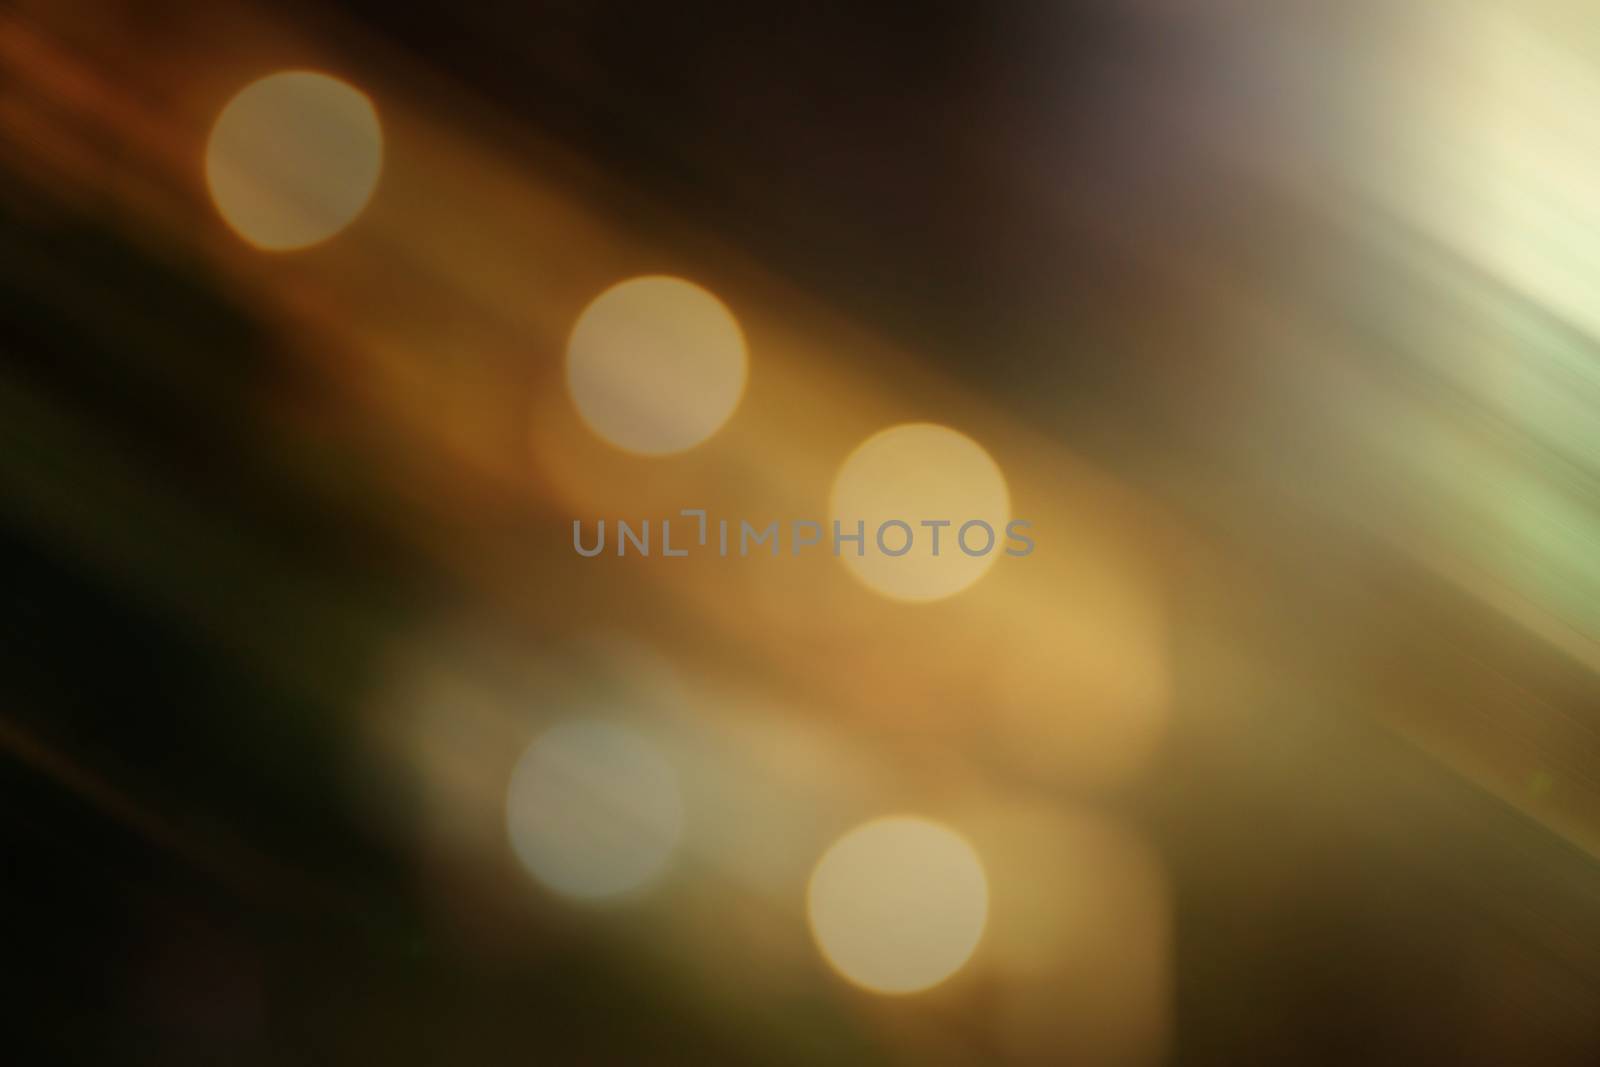 Elegant background blur by primzrider